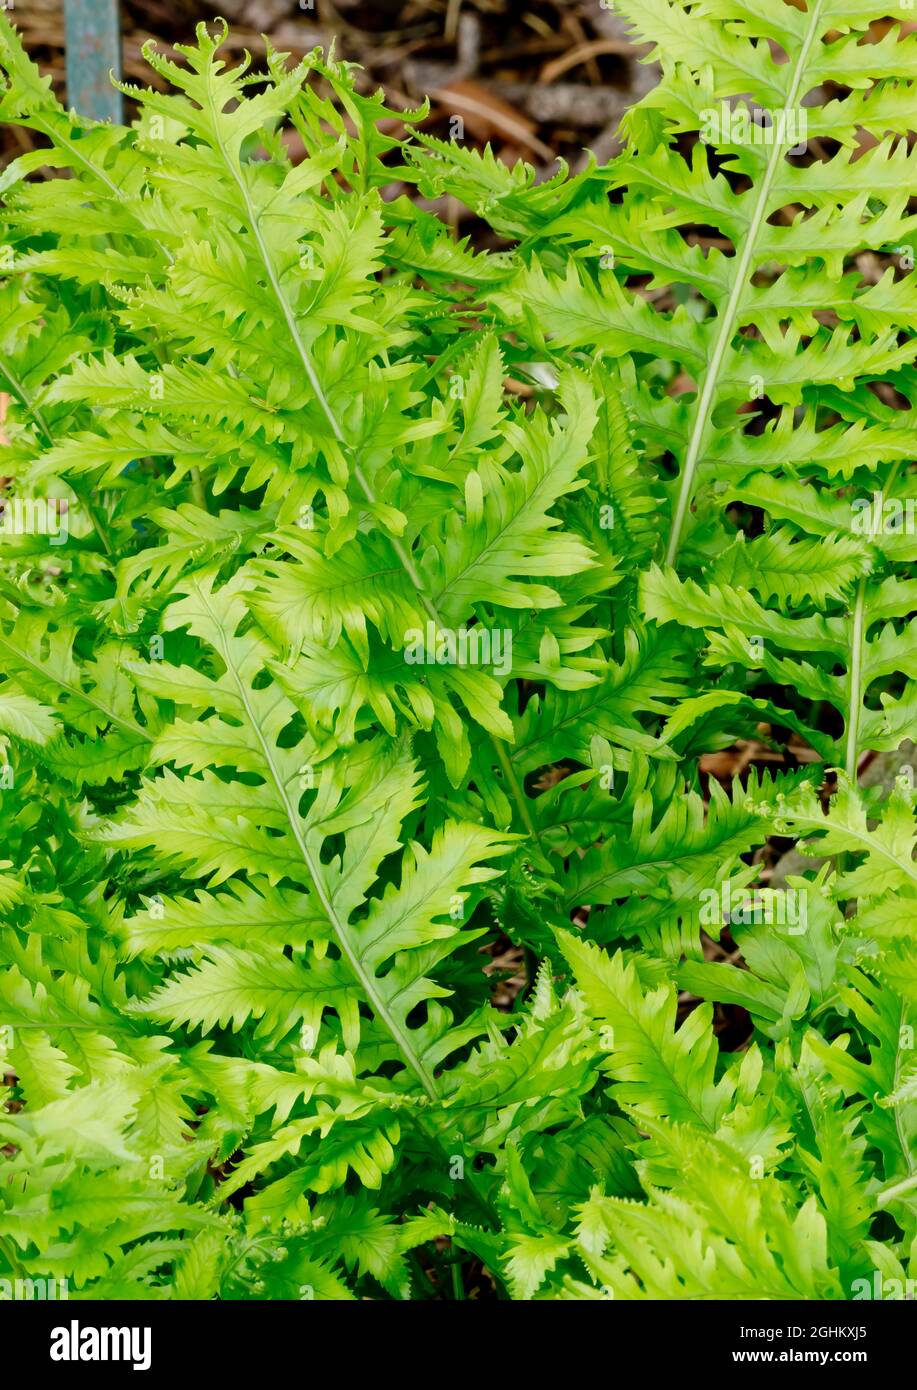 Polypodium cambricum 'Cristatum' Stock Photo